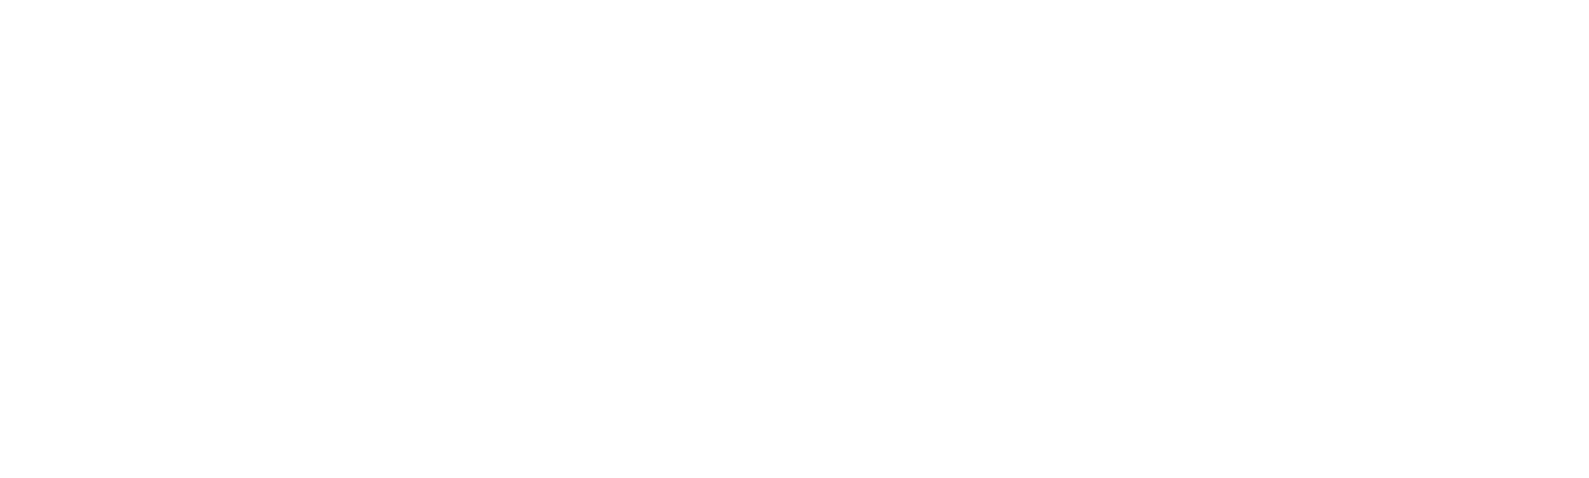 Teleflex logo large for dark backgrounds (transparent PNG)